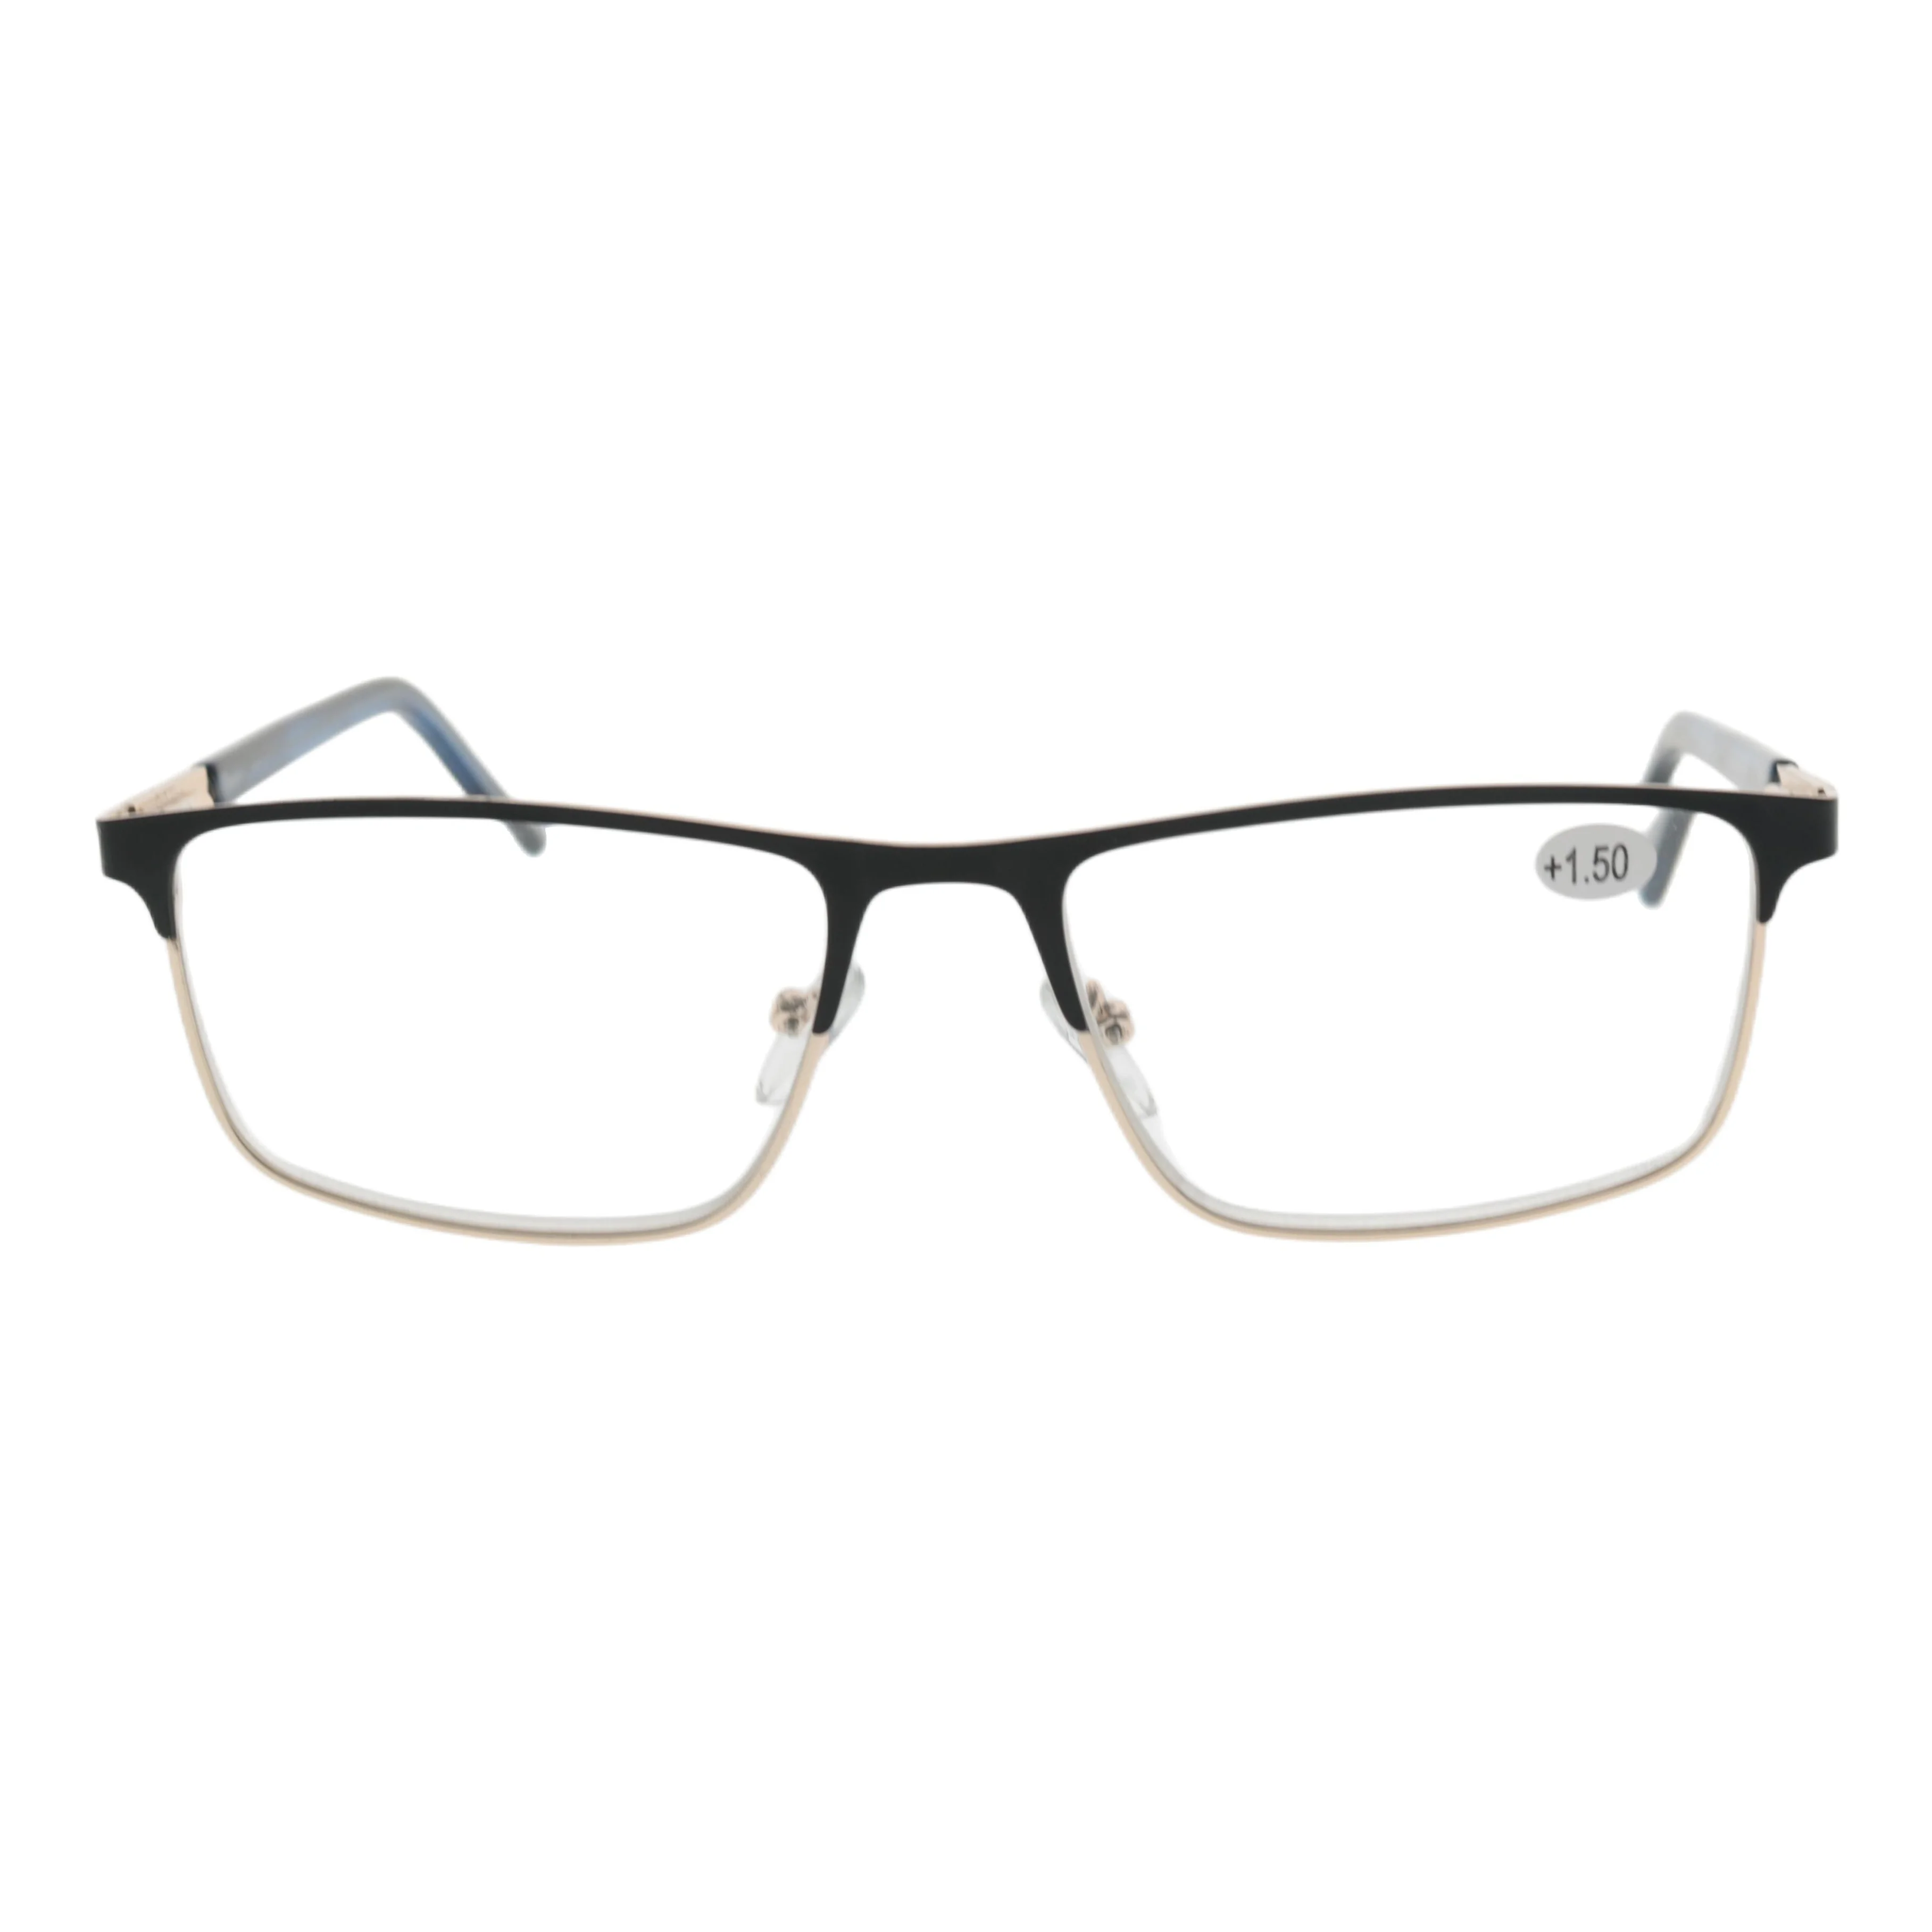 Очки для чтения Sunbest 2559 от производителя очков от производителя, индивидуальные пресбиопические очки, металлические прямоугольные пружинные петли, очки для чтения